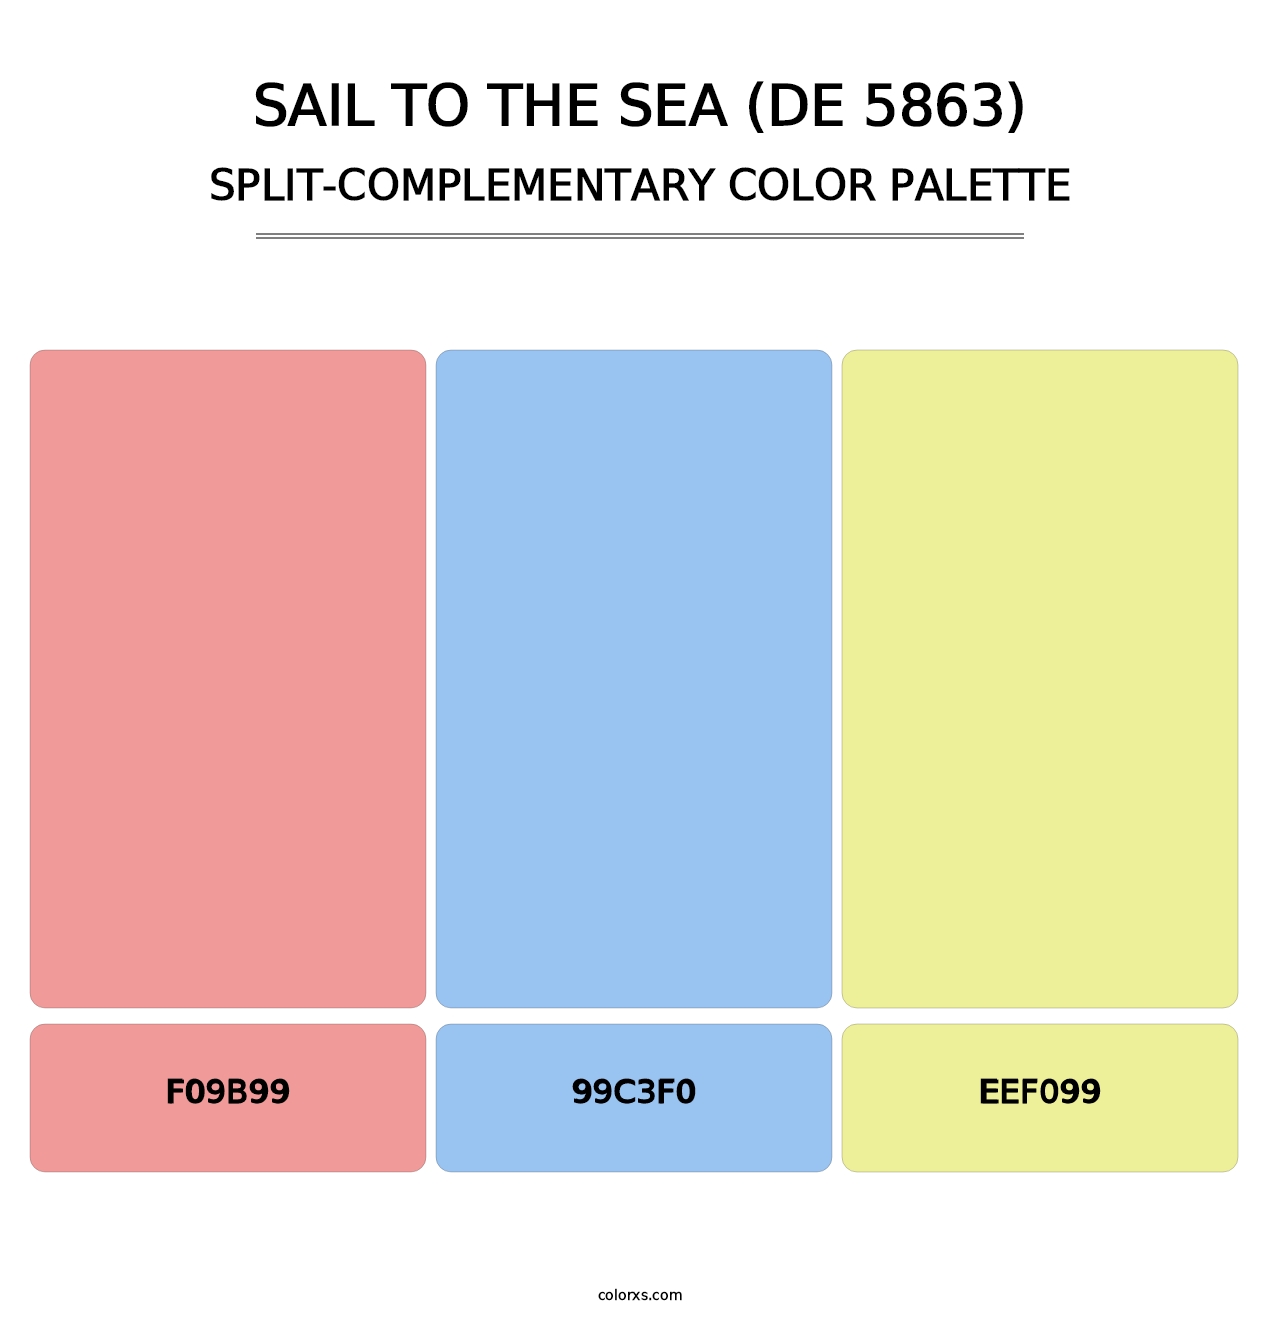 Sail to the Sea (DE 5863) - Split-Complementary Color Palette